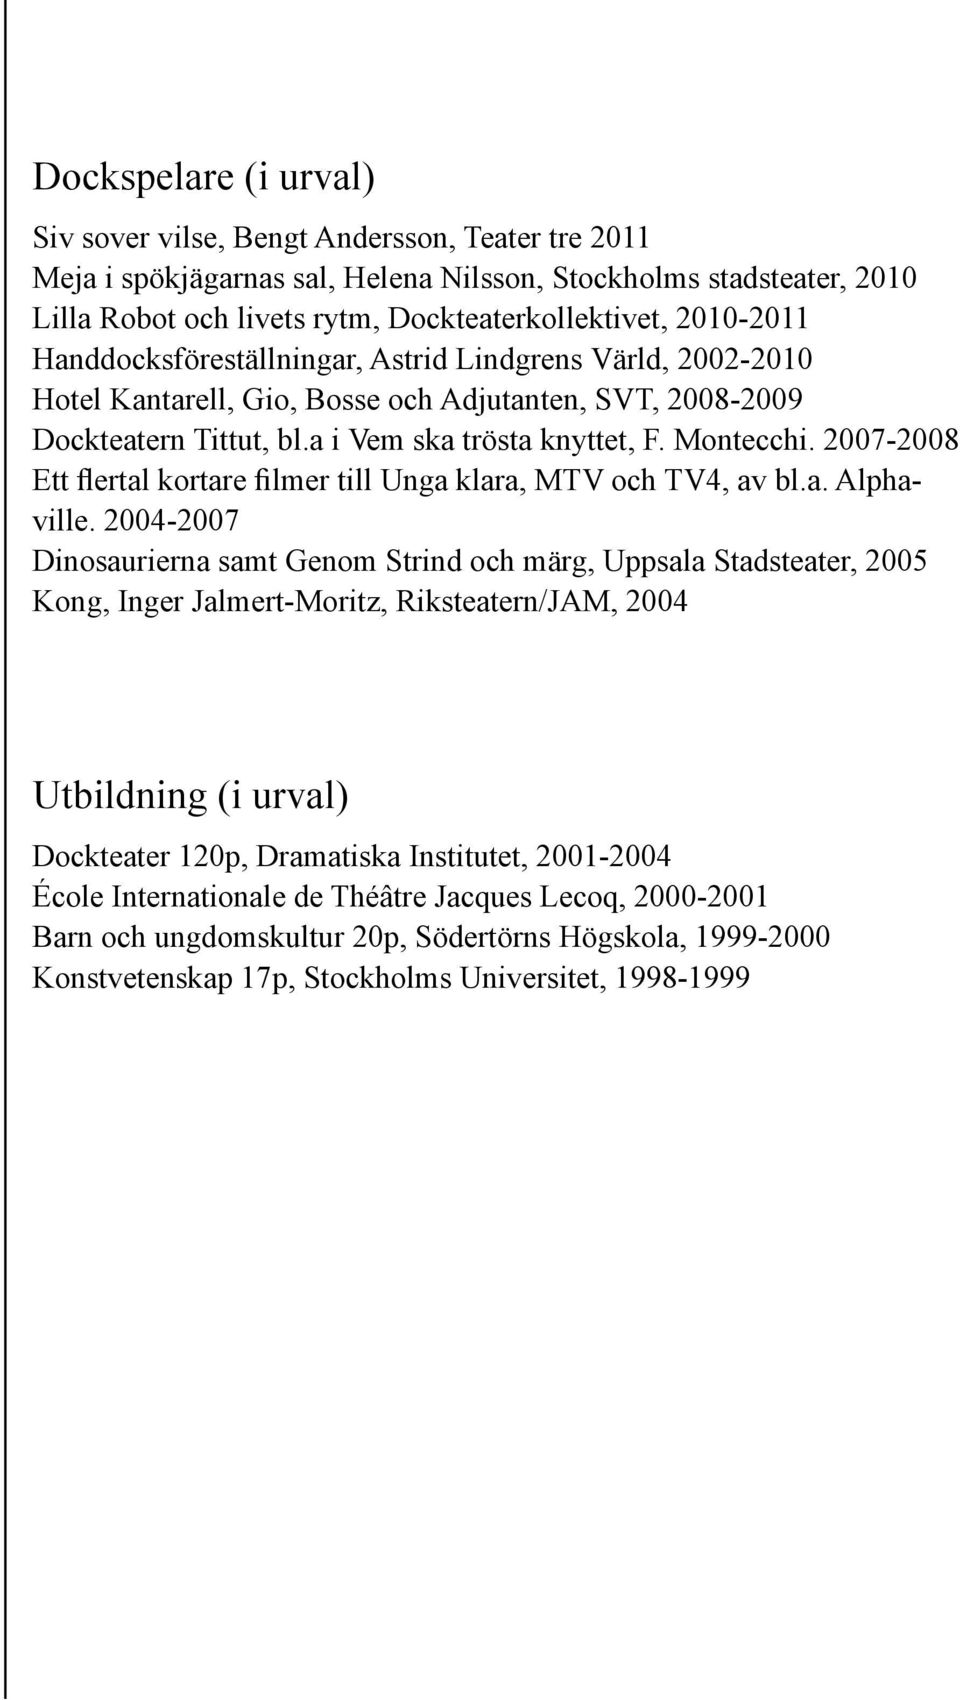 2007-2008 Ett flertal kortare filmer till Unga klara, MTV och TV4, av bl.a. Alphaville.